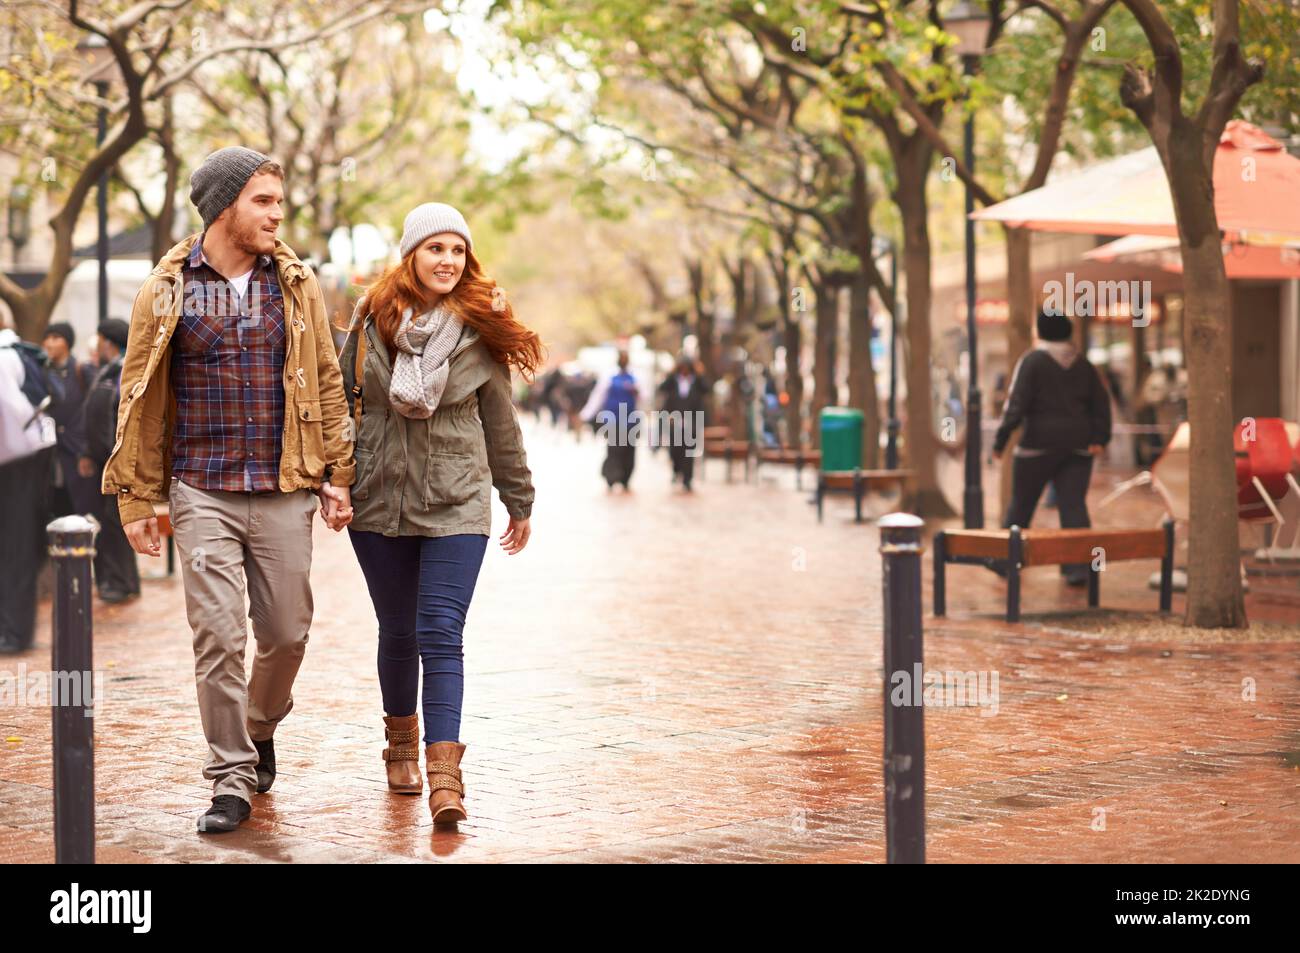 Fare una passeggiata sul lato invernale. Scatto di una giovane coppia felice che cammina attraverso una zona urbana insieme. Foto Stock